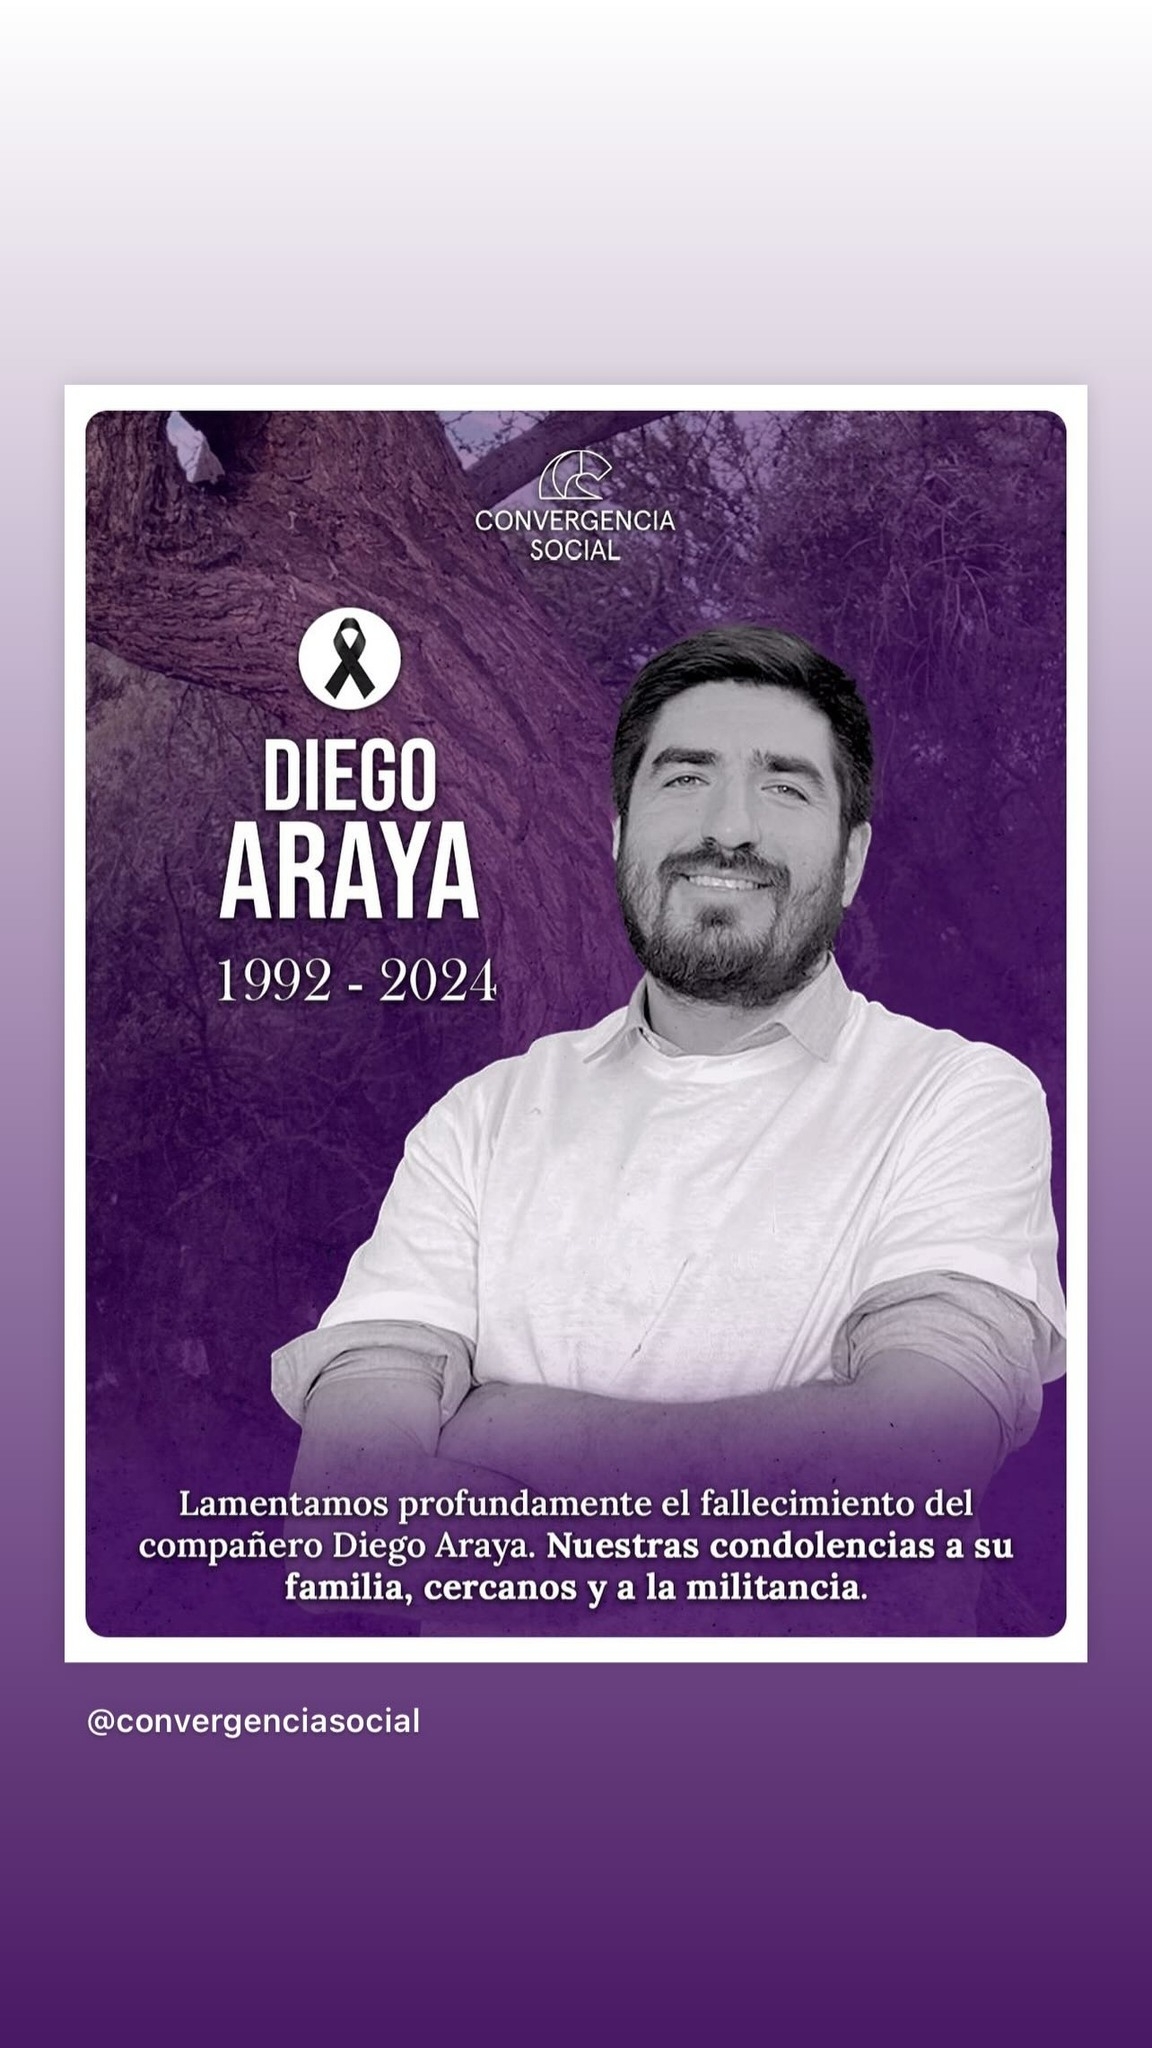 Historia sobre fallecimiento de Diego Araya compartida por el Presidente Boric / Instagram